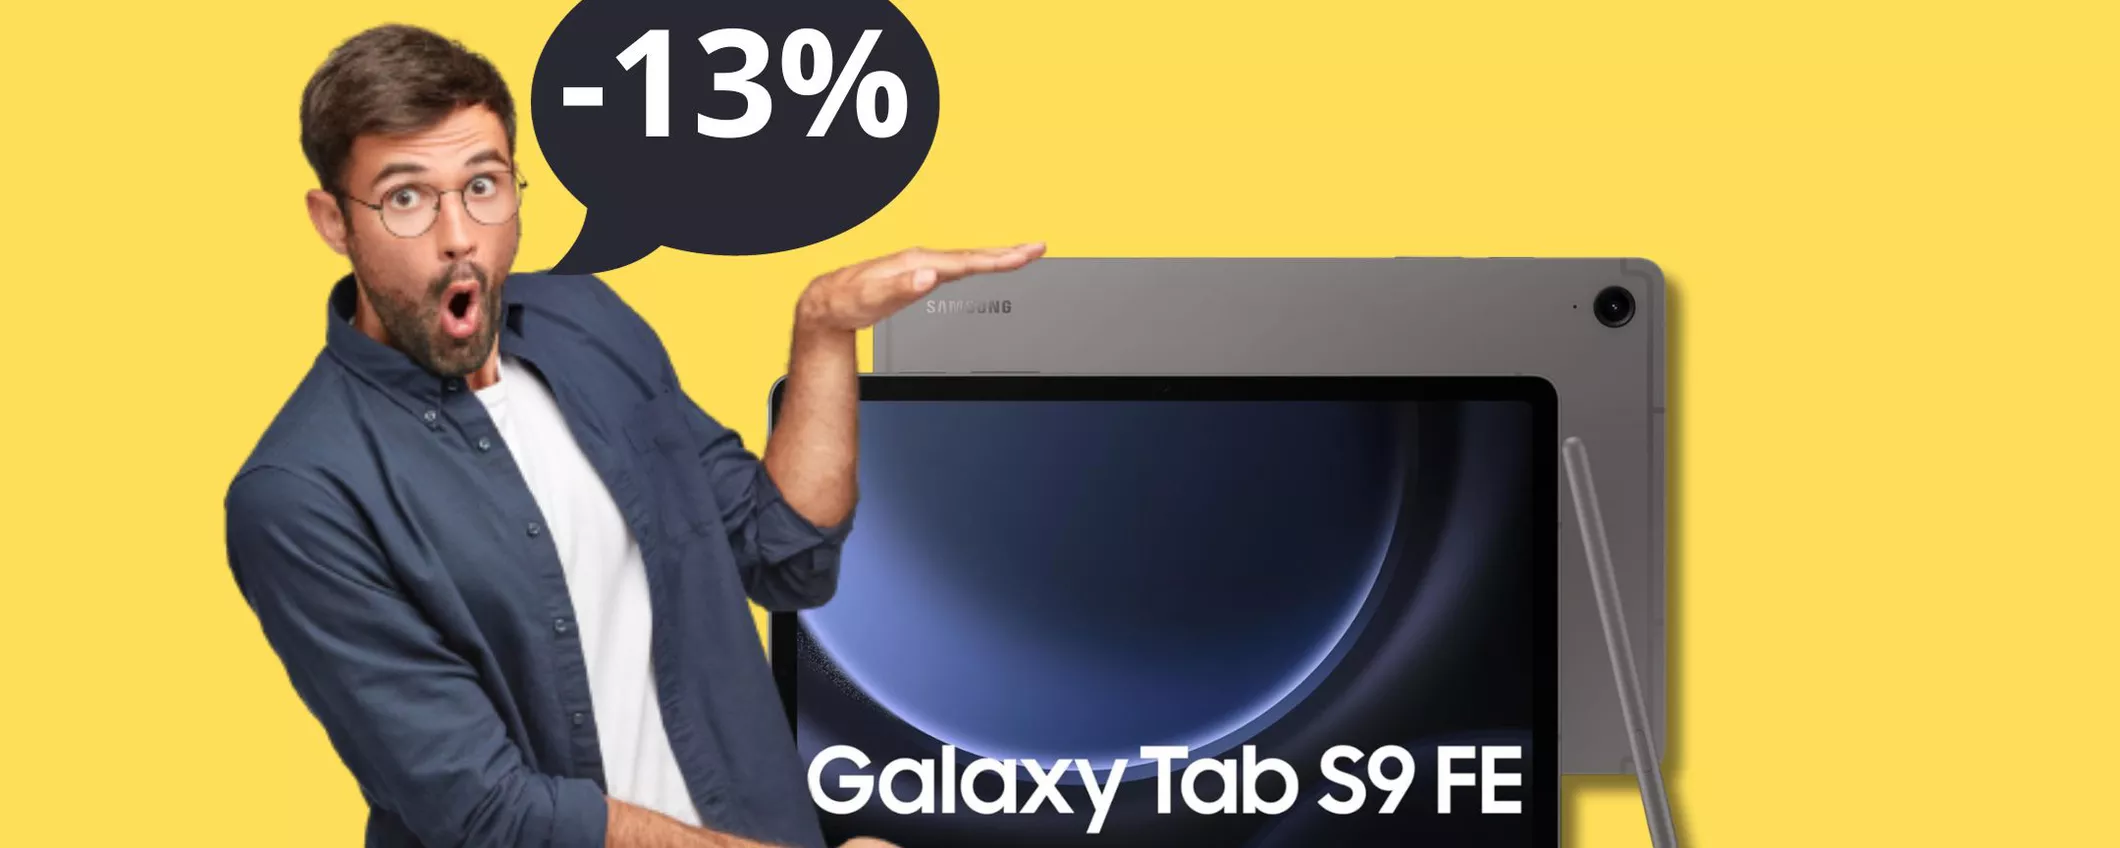 Samsung Galaxy Tab S9 FE: il potentissimo tablet è sceso di prezzo, meglio sbrigarsi!